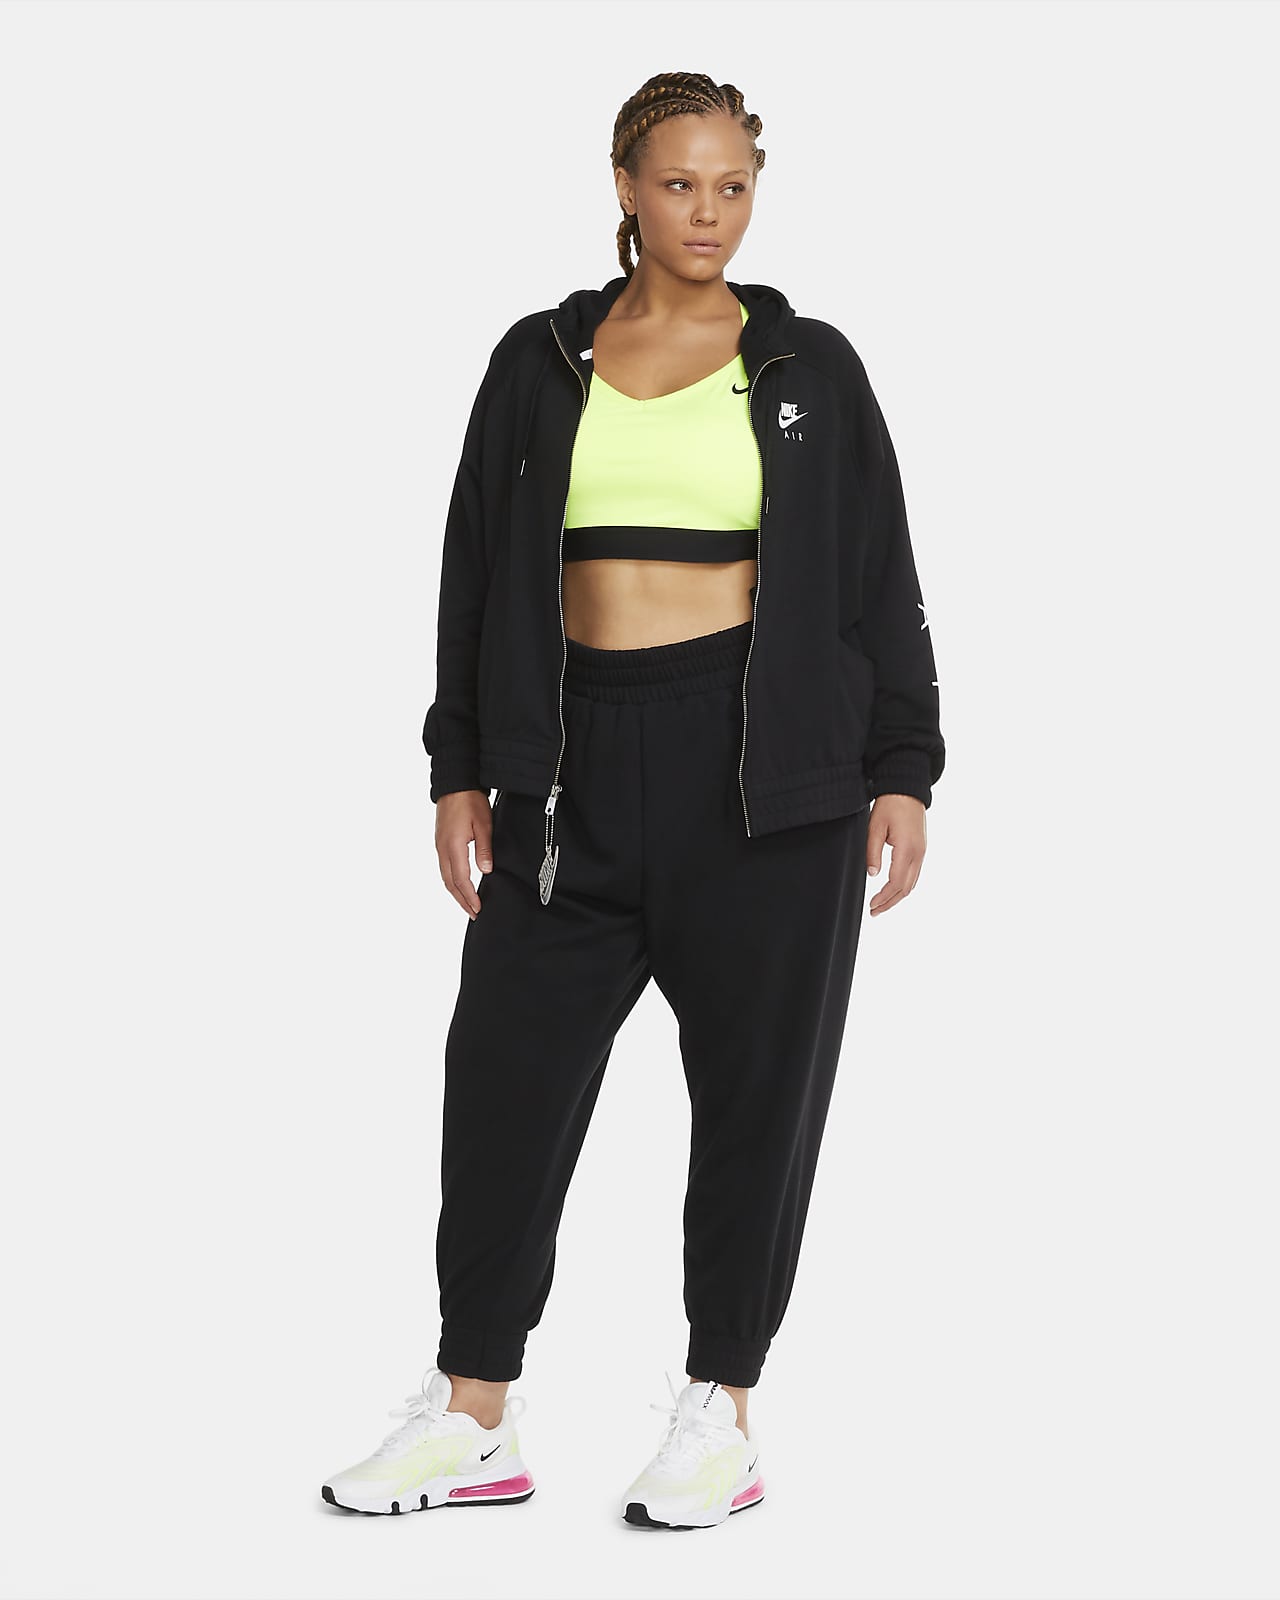 Nike Air Women's Full-Zip Fleece Hoodie 